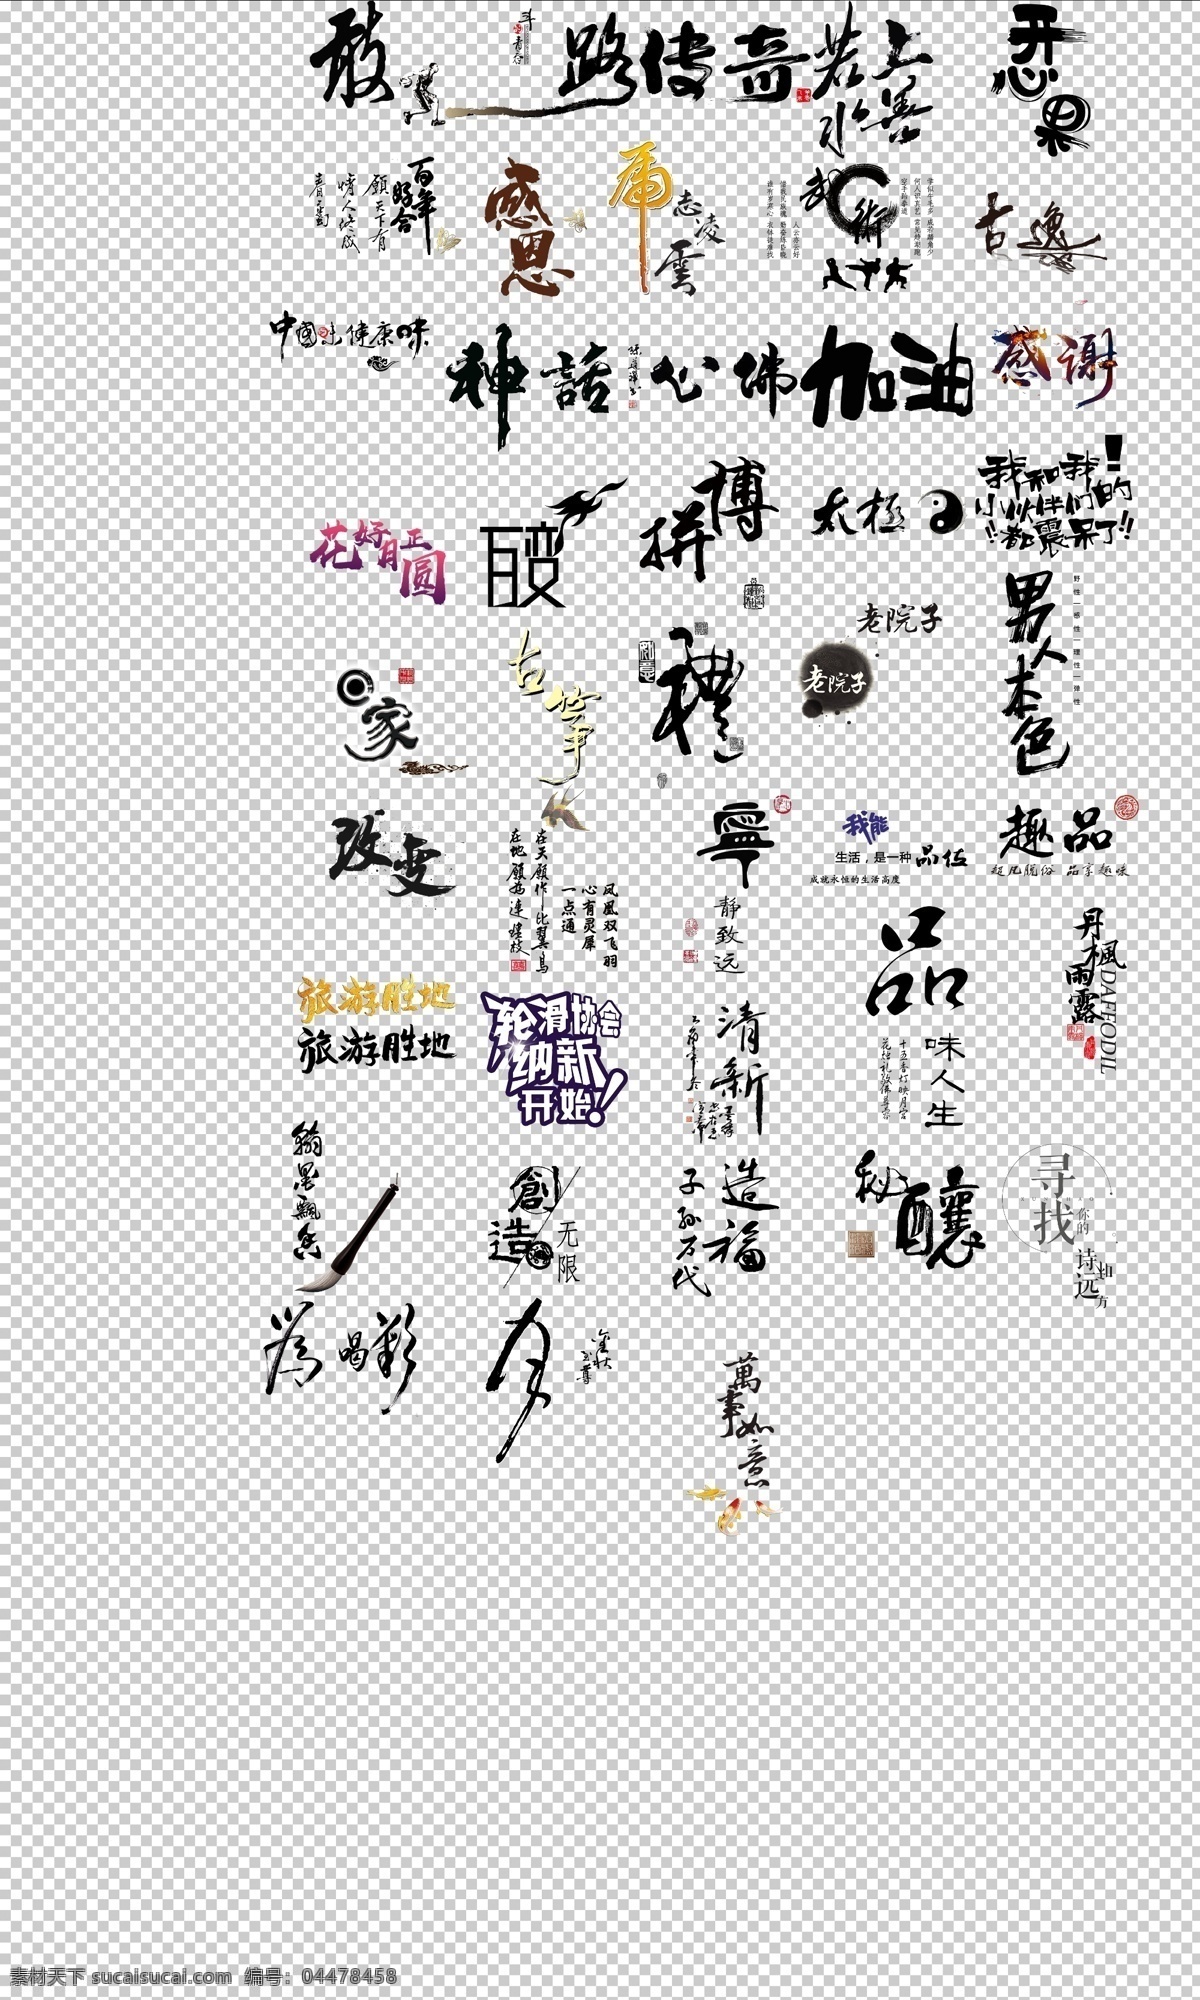 中国 风 艺术 字体 各种 水墨 字 常用词 词语 免抠 常用 网络词 中国风 拼博 分层